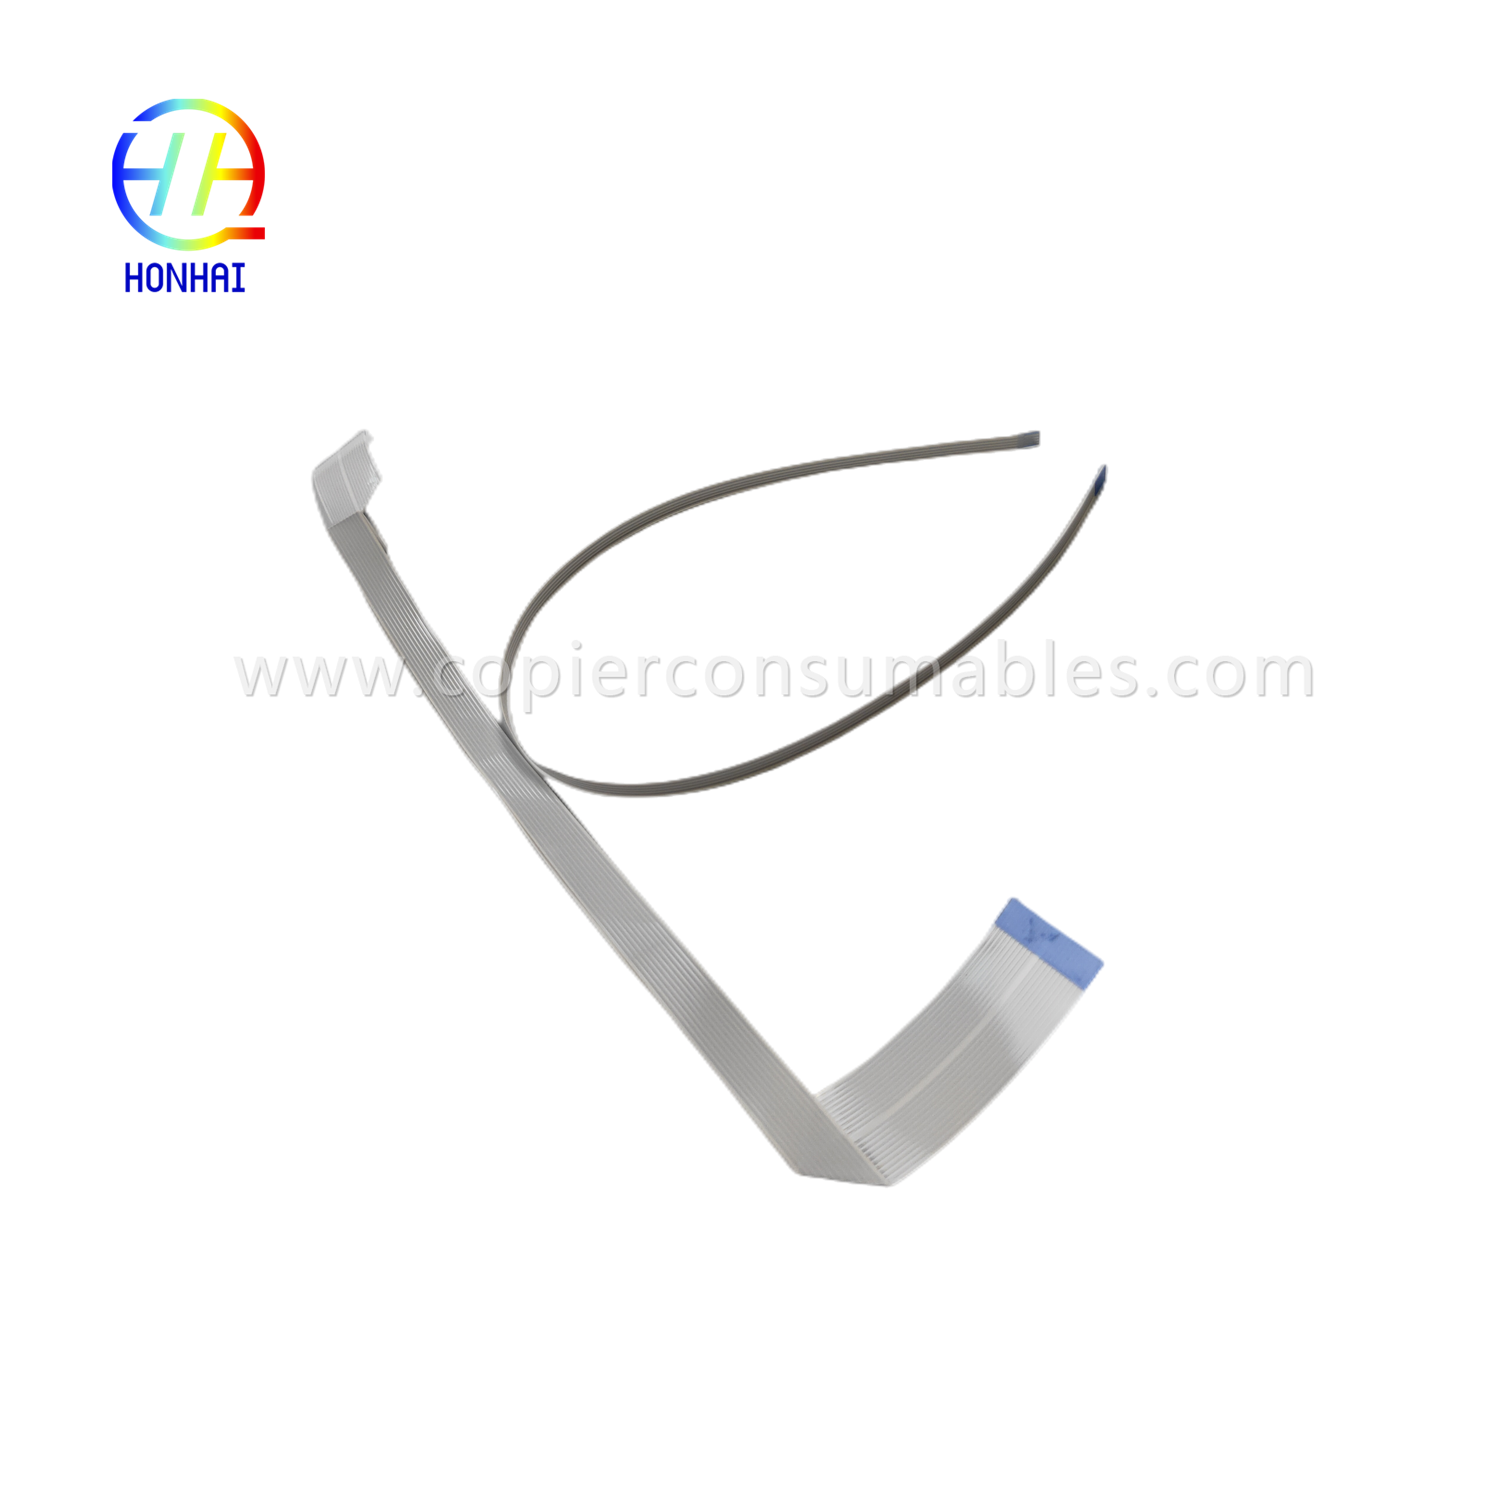 Kabel Fleksibel untuk Epson L1110 L3110 L3210 L3150 L3250 L5190 L5290 Kabel Kepala